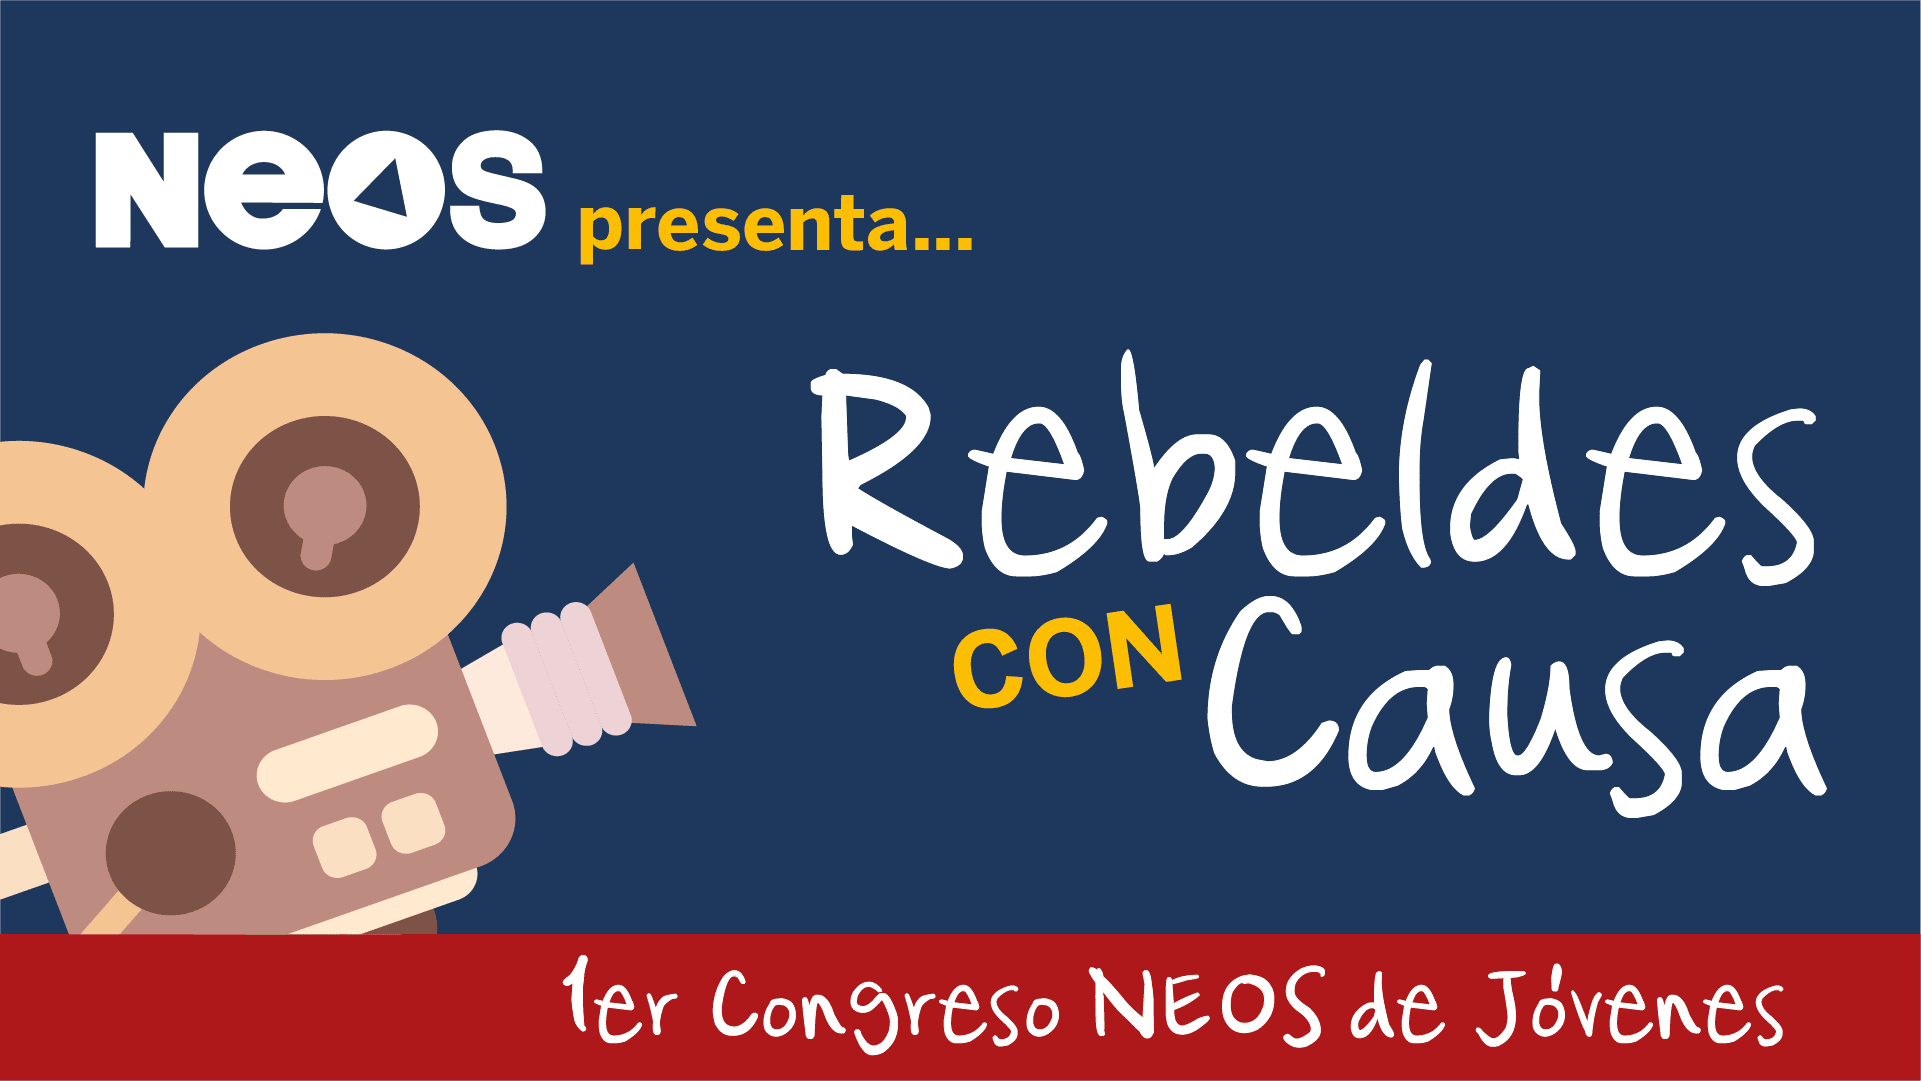 NEOS presenta: Rebeldes con causa